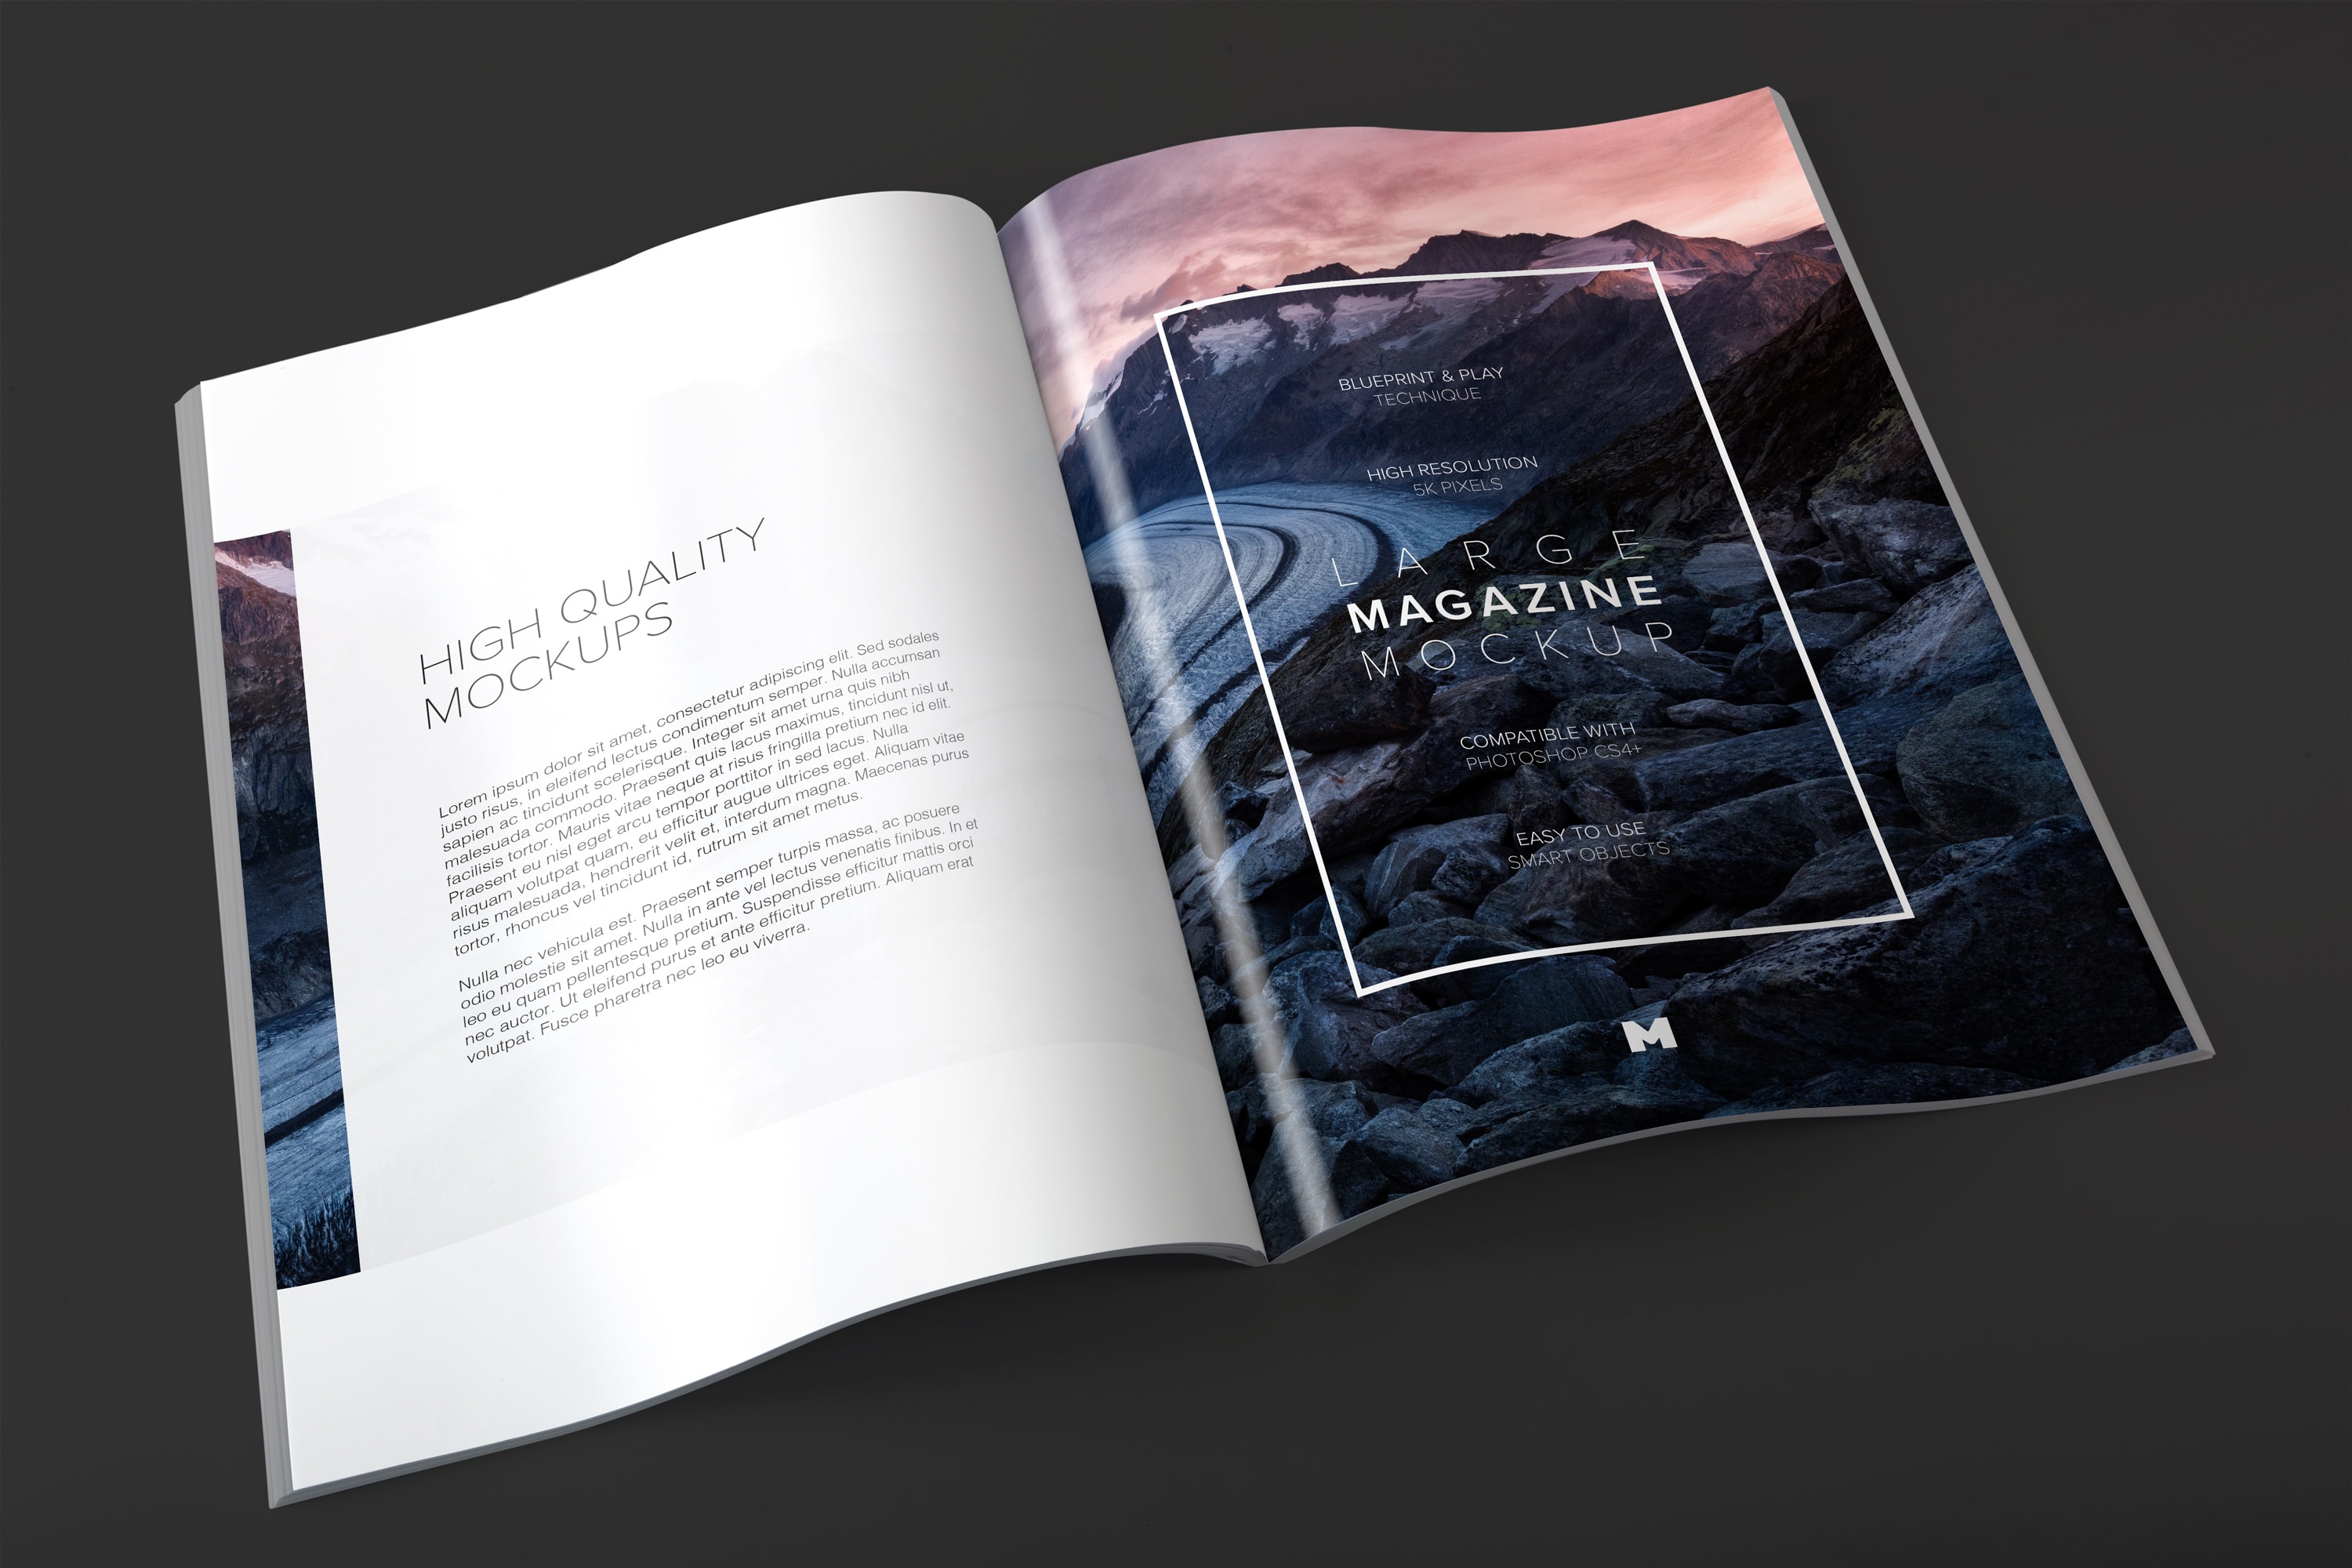 大型杂志内页版式设计印刷效果图样机 Large Magazine Spreads Mockup插图(2)